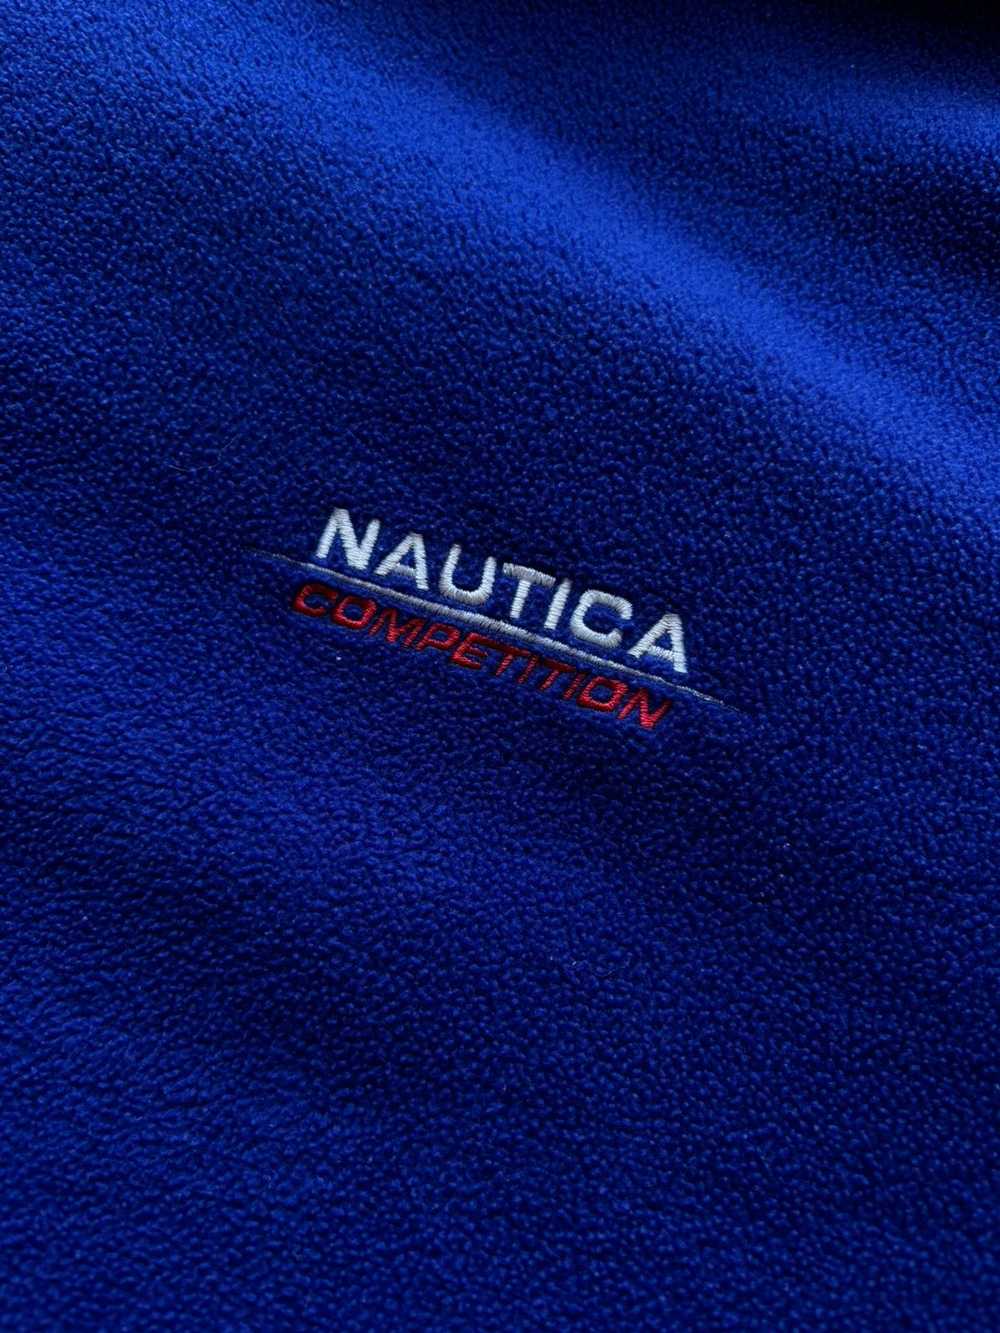 Nautica × Streetwear × Vintage vintage 90s NAUTIC… - image 9